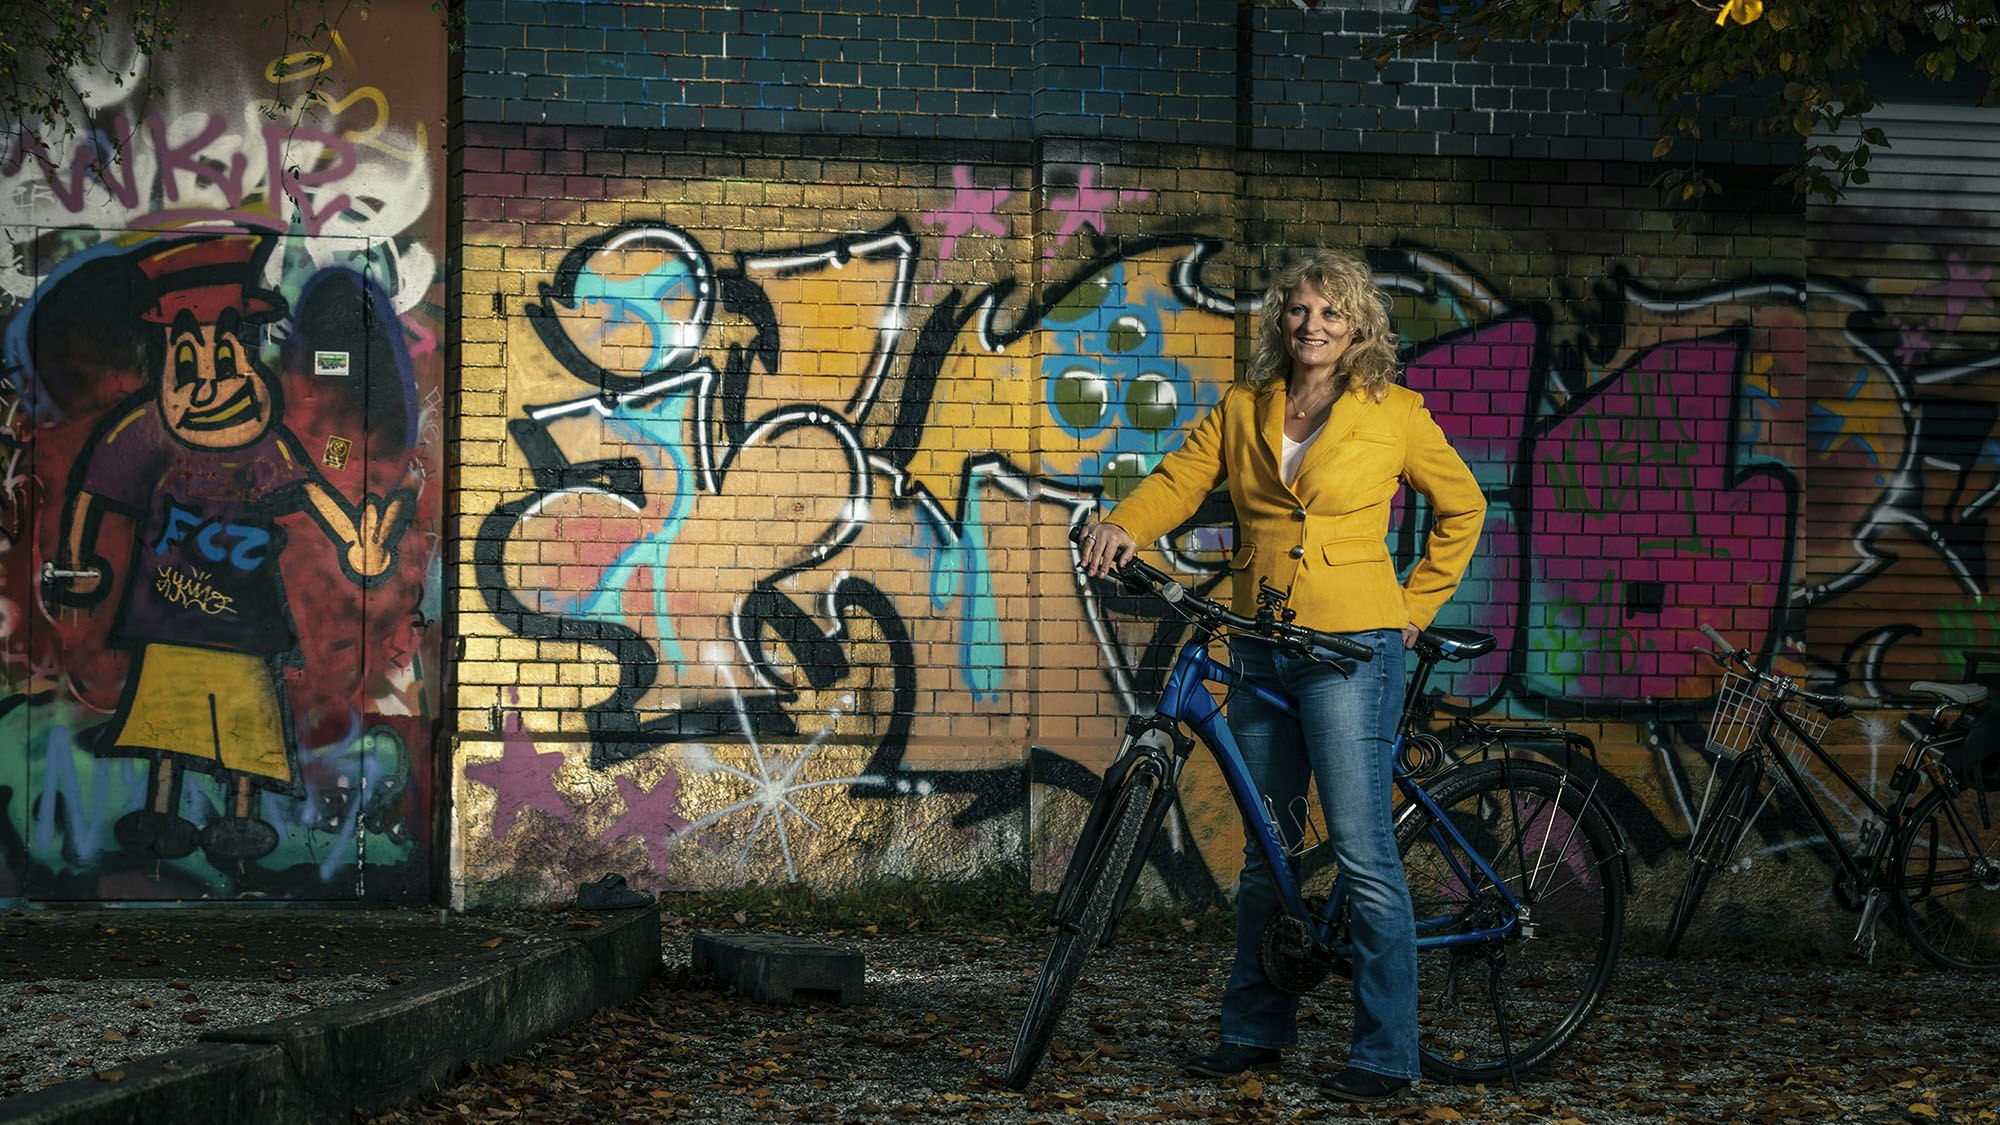 Denisa und die Wand, auf dem Fahrrad